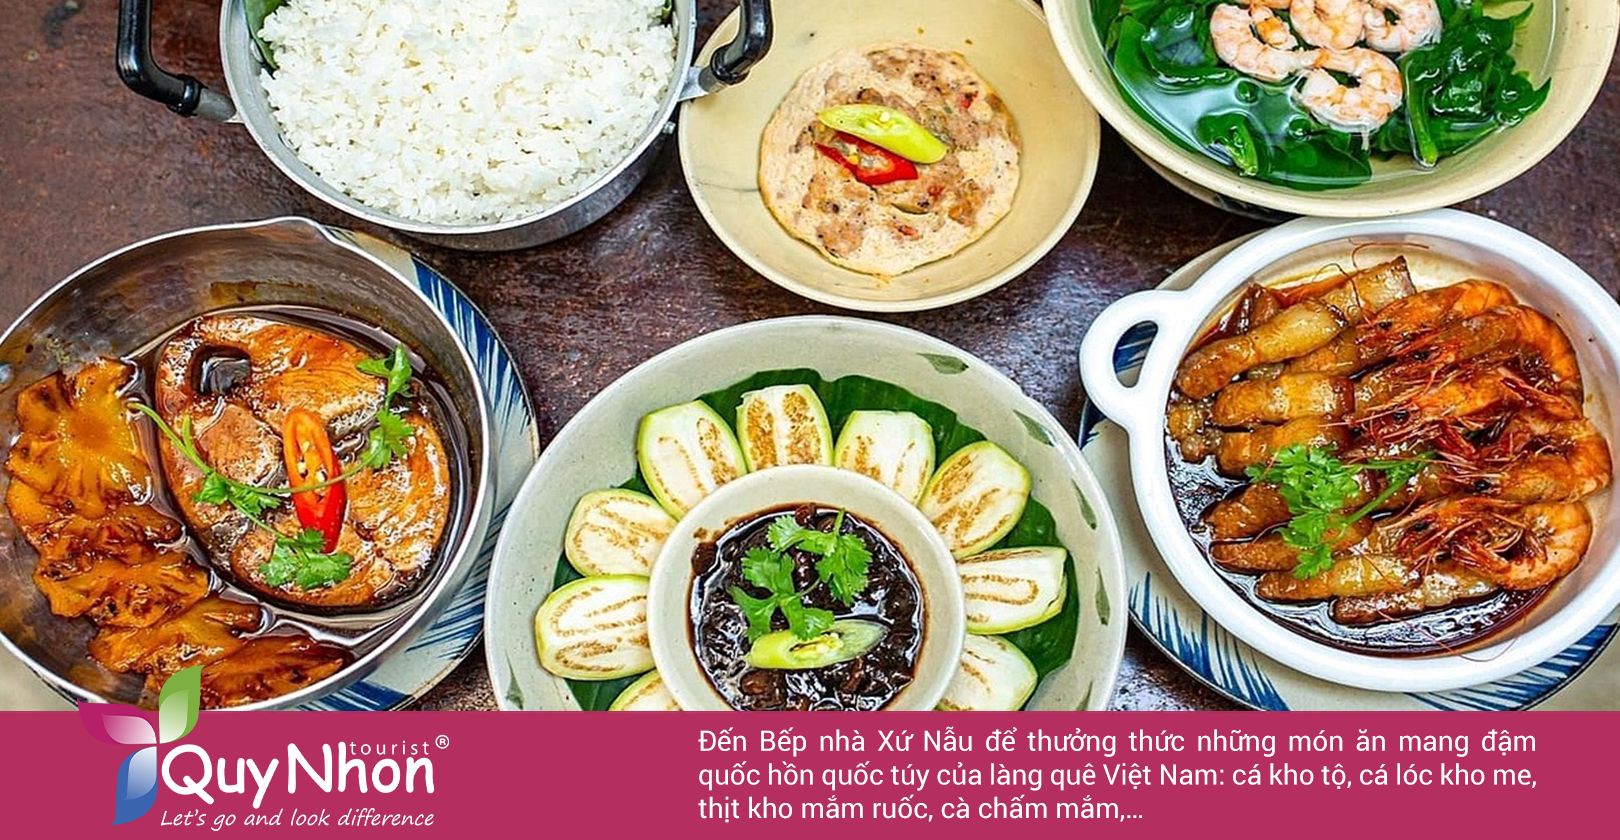 Đến Bếp nhà Xứ Nẫu để thưởng thức những món ăn mang đậm chất làng quê Việt Nam.